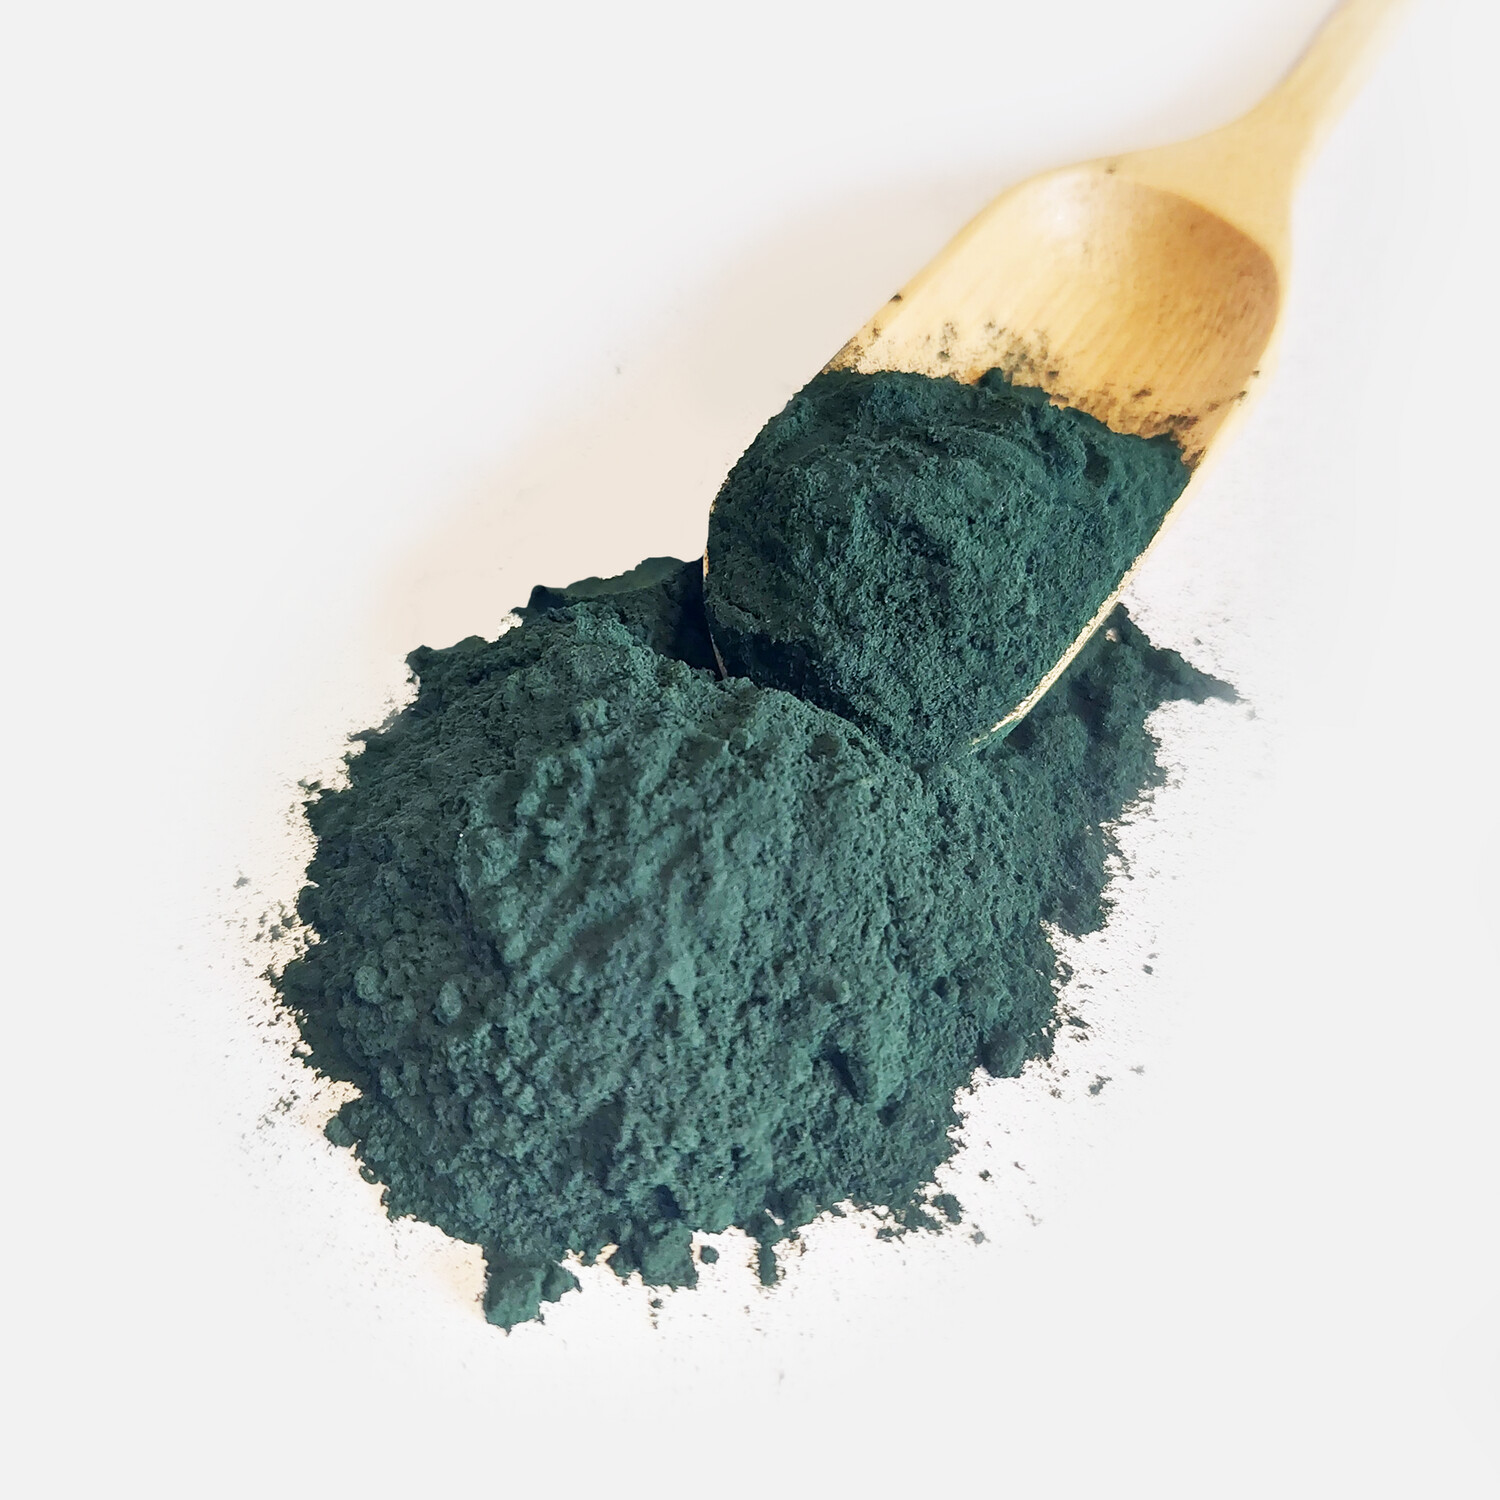 Dark Green Spirulina Powder - 69% Protein - 100g - 1kg